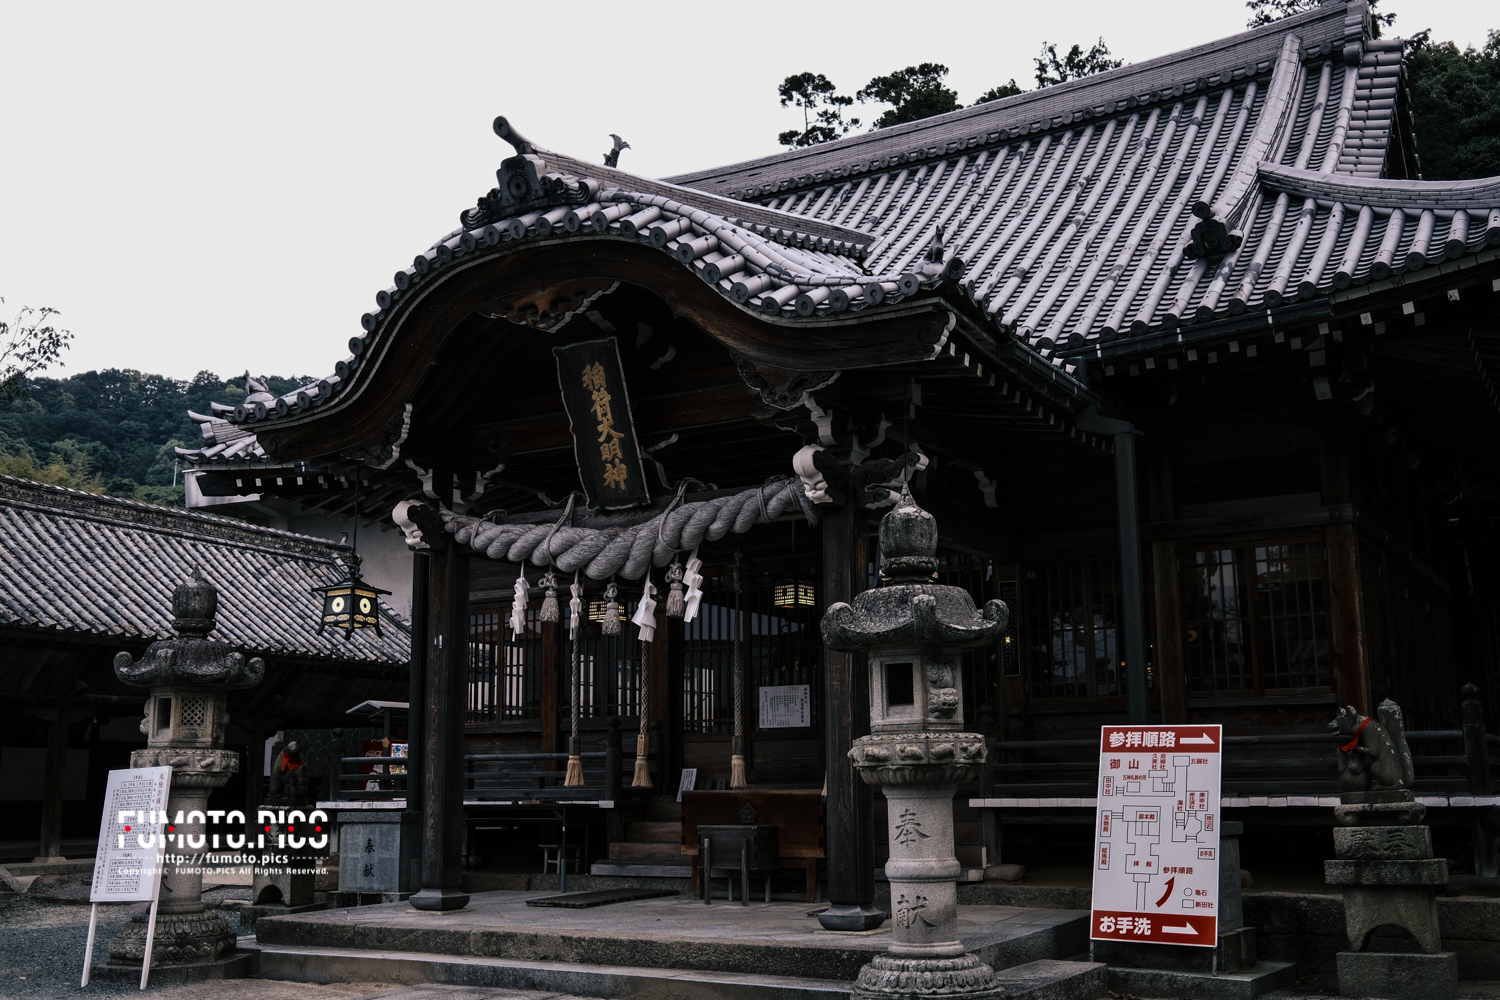 伊豫稲荷神社は平安時代初期に祀られた由緒ある神社